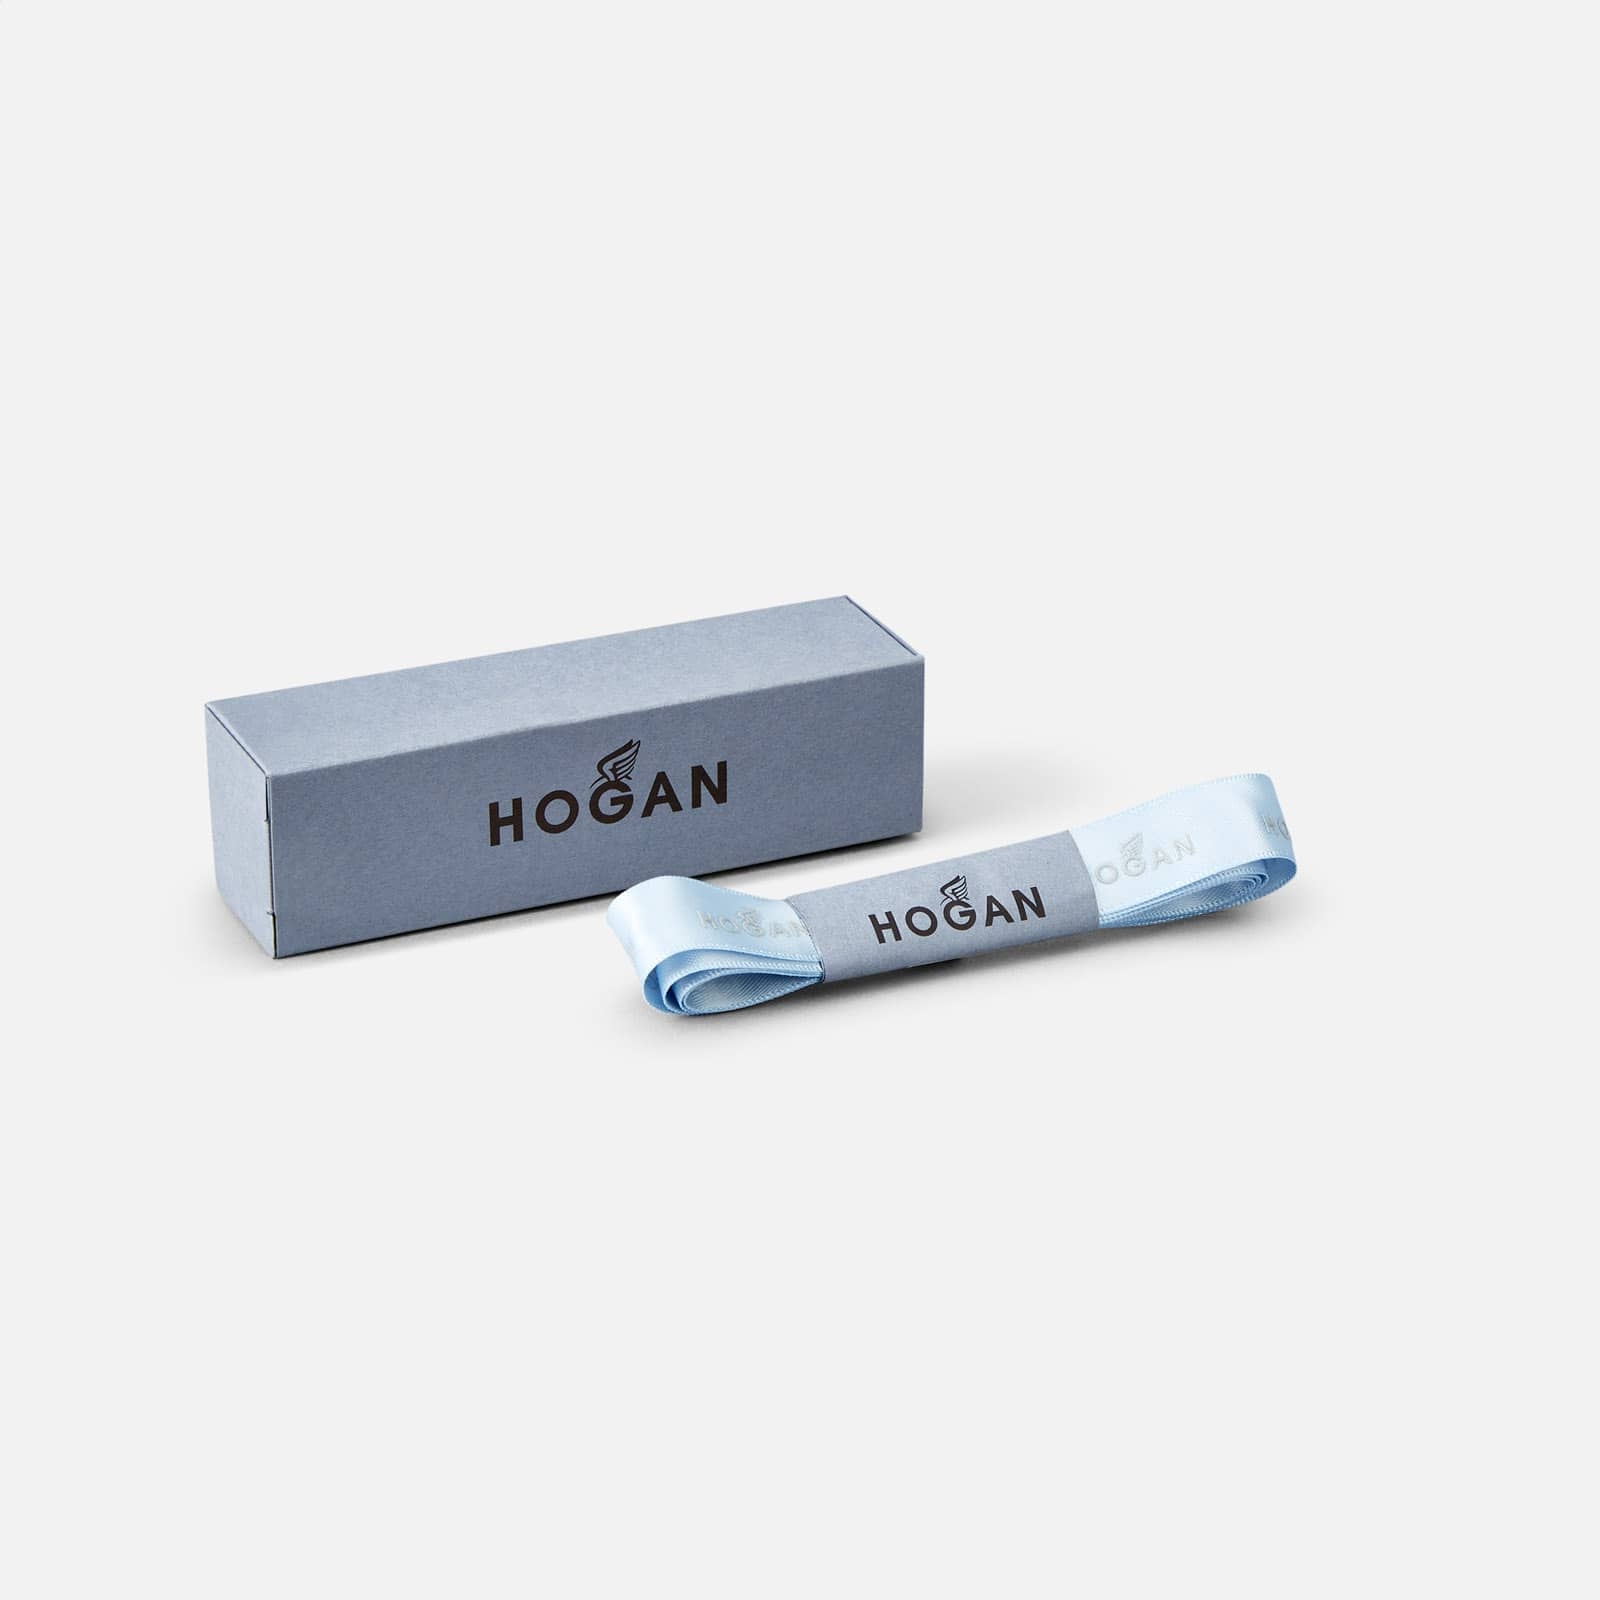 Hogan By You - Laces Light Blue - 3